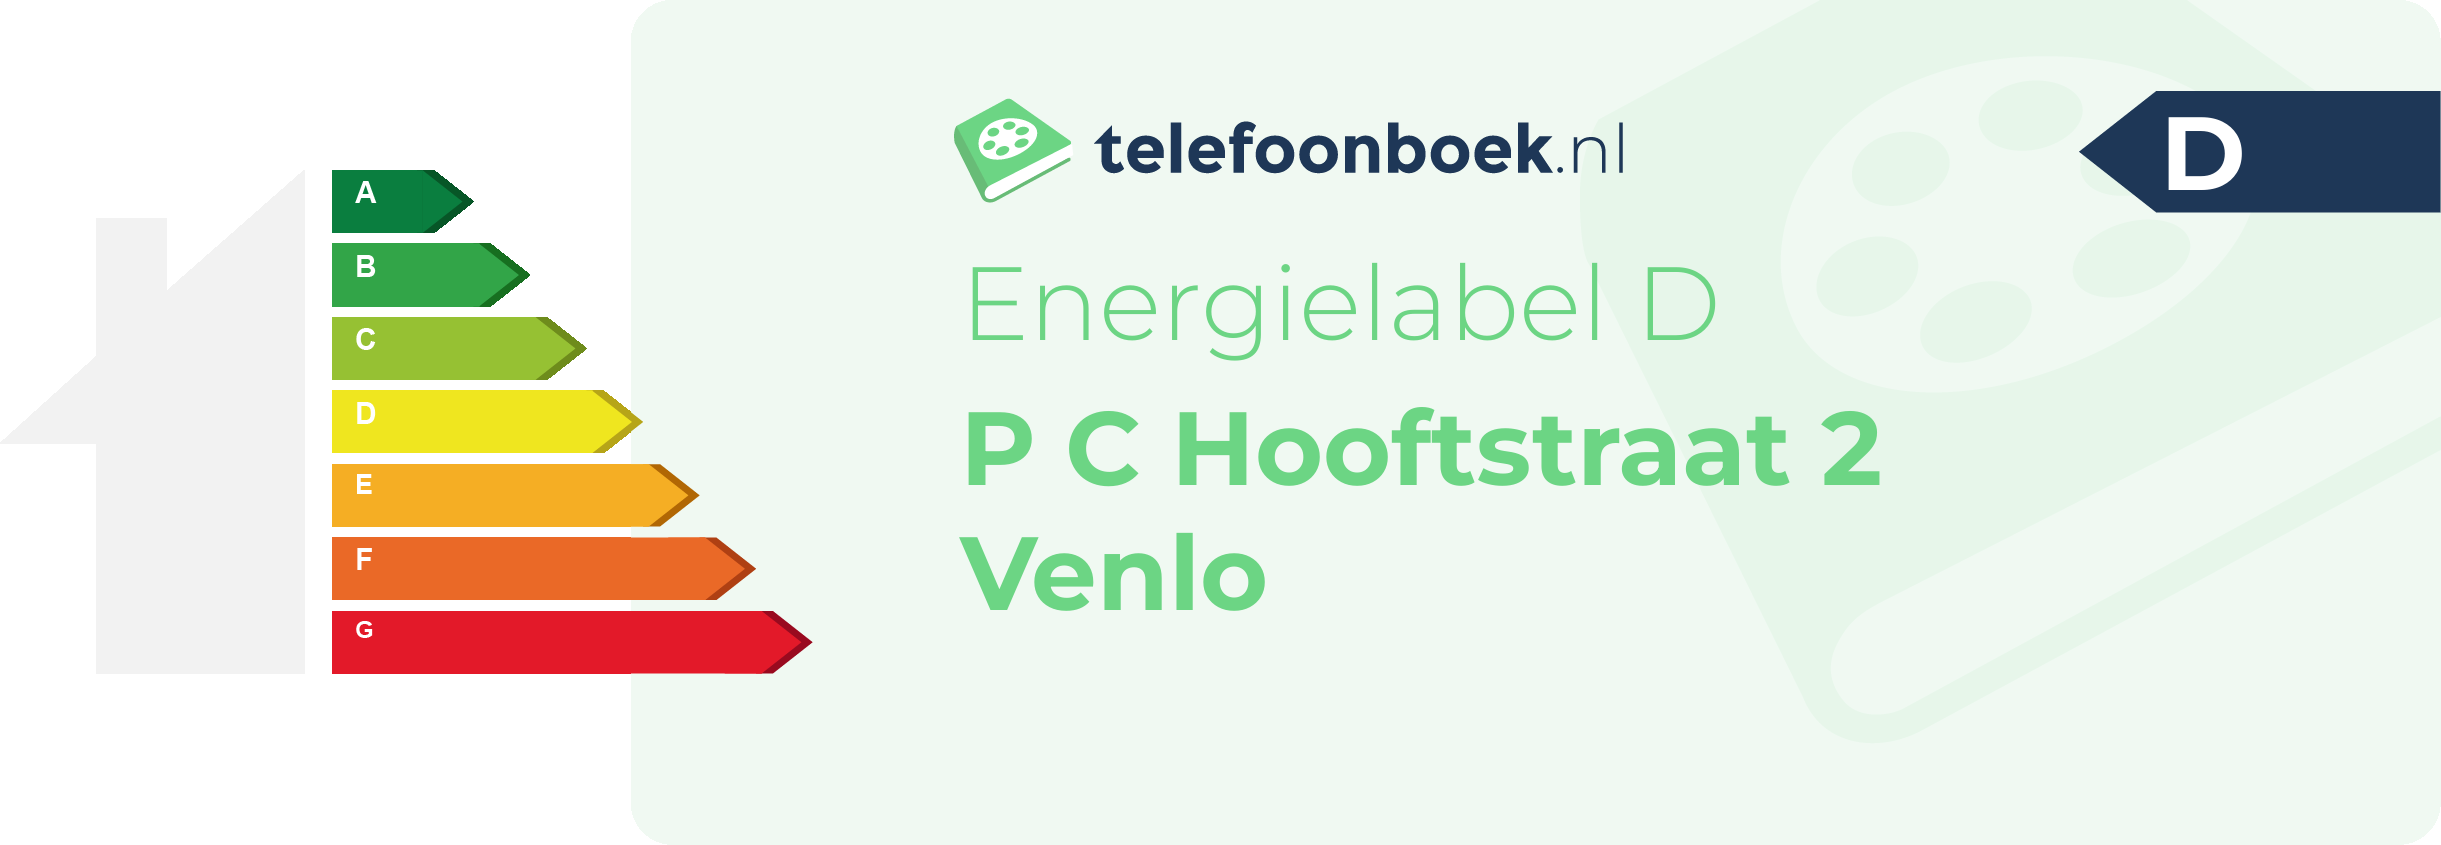 Energielabel P C Hooftstraat 2 Venlo